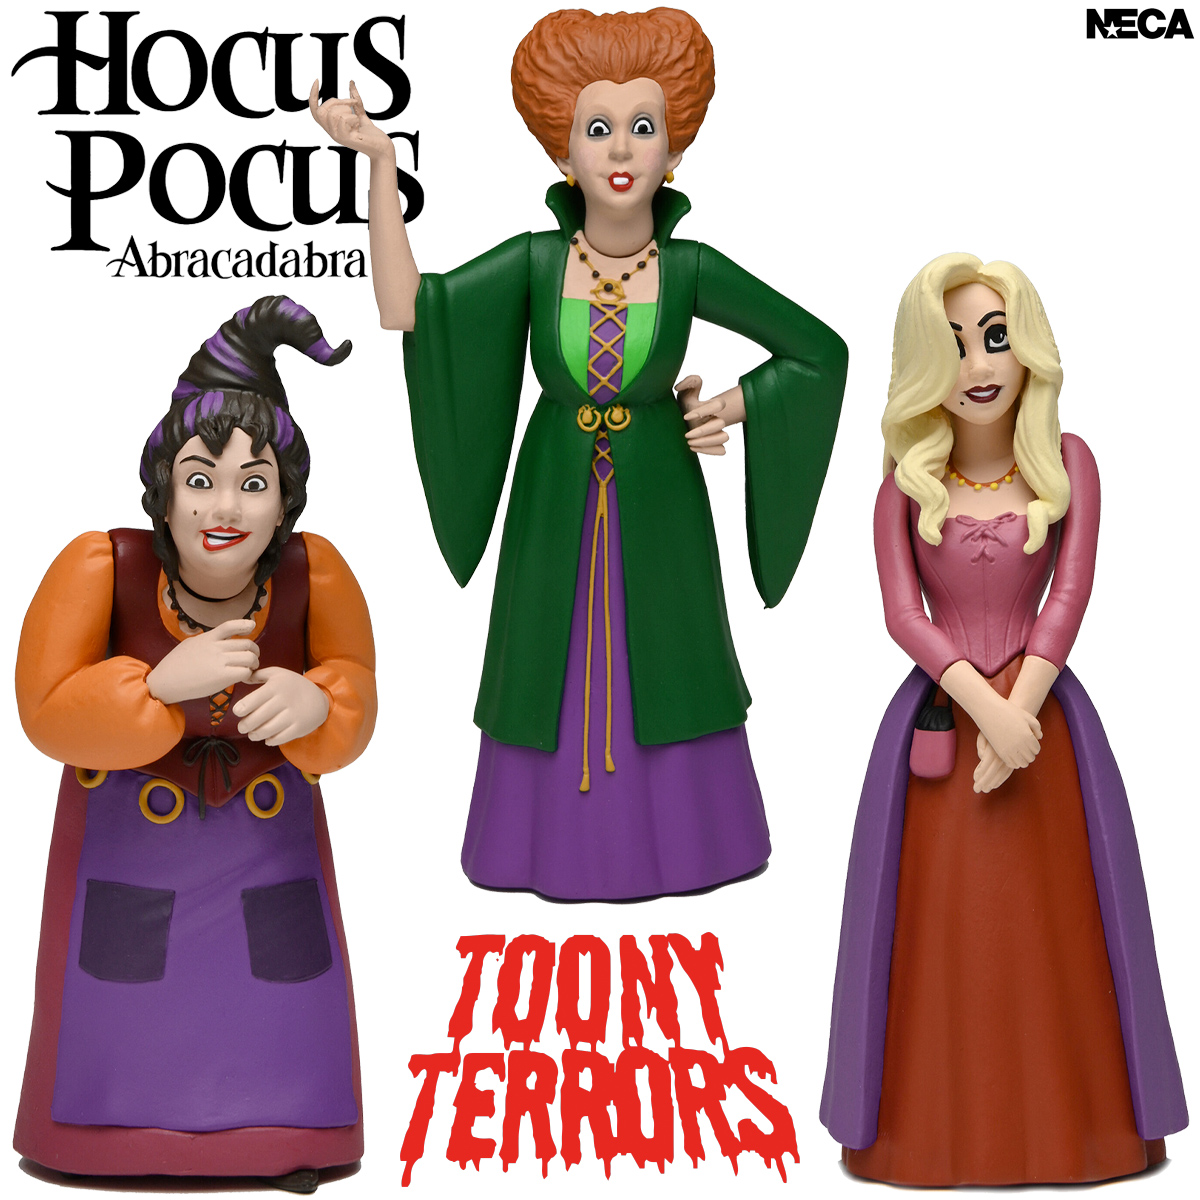 Toony Terrors: Bruxas Sanderson do Filme Abracadabra (Hocus Pocus)